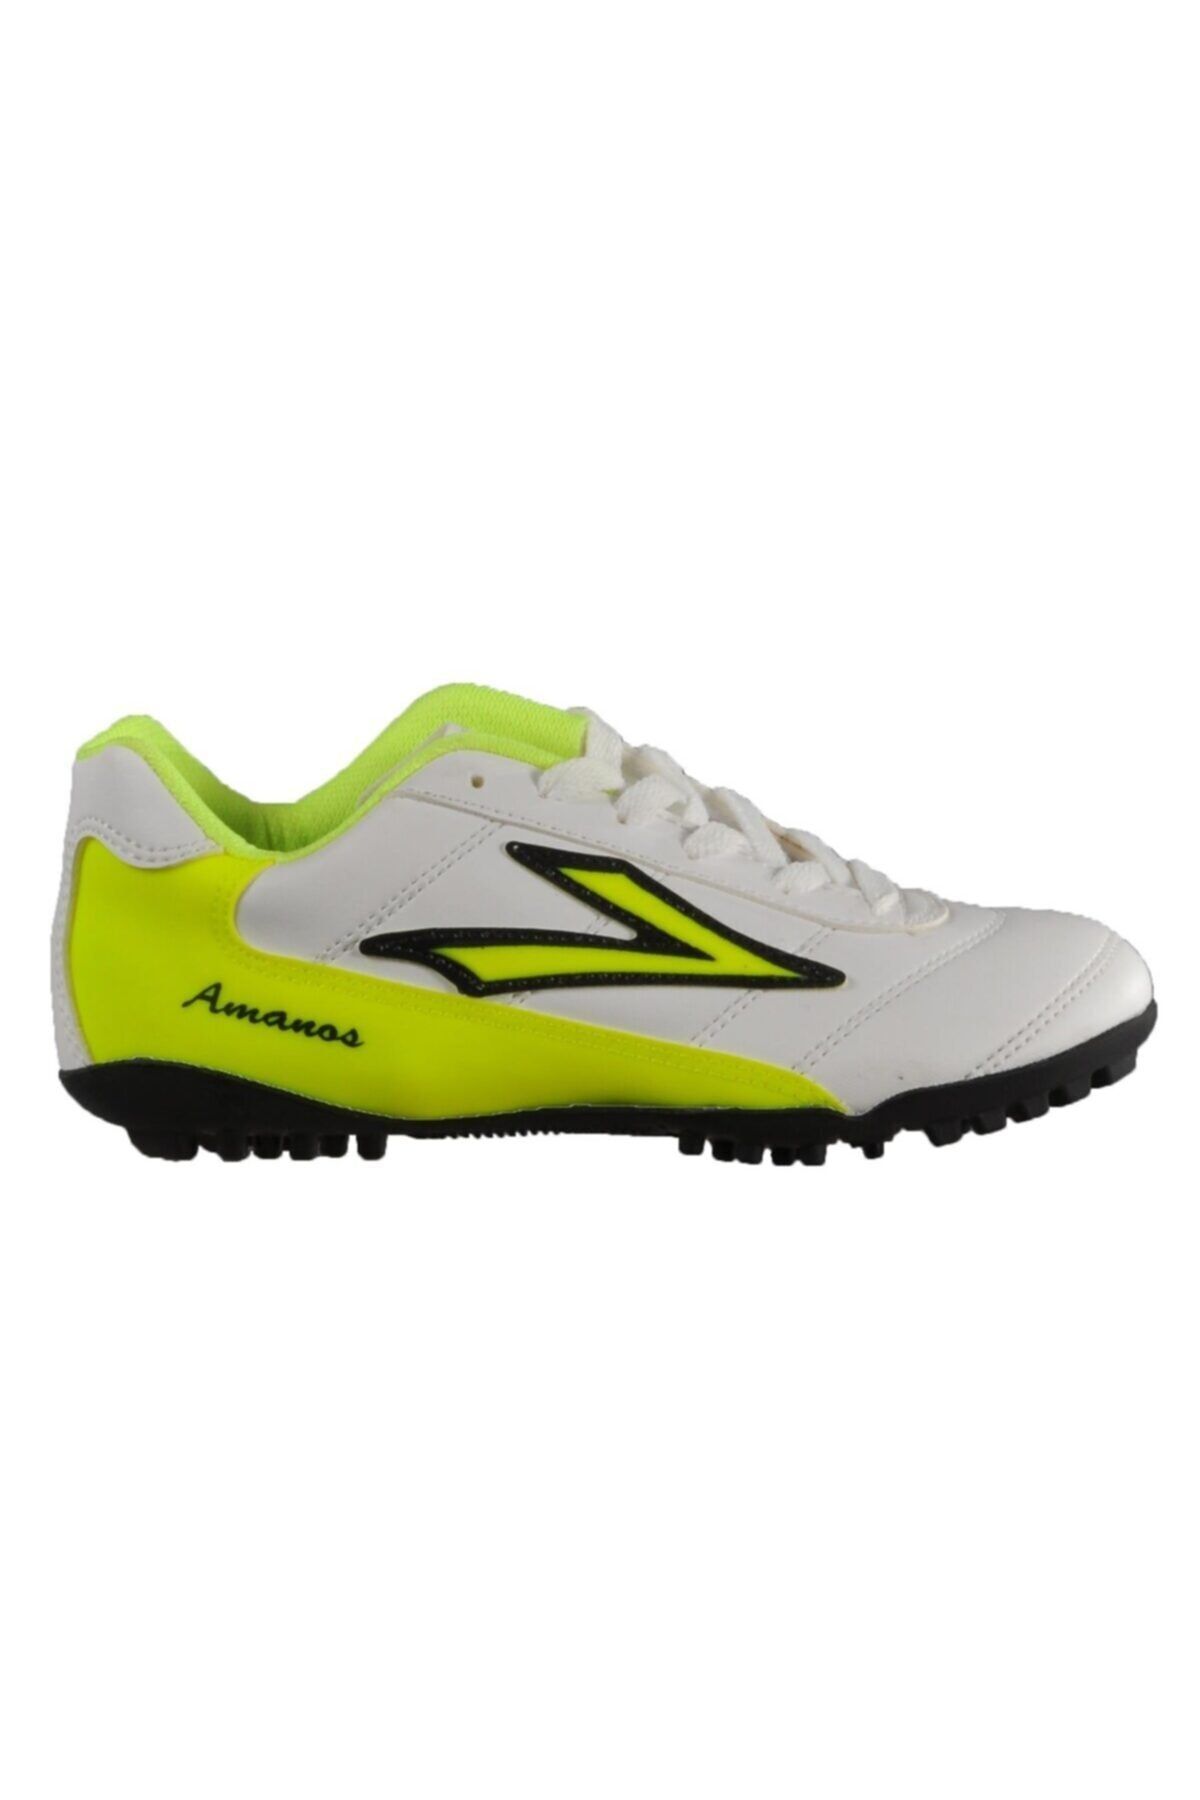 Lig Amanos Beyaz Neon Sarı Erkek Halısaha Ayakkabısı